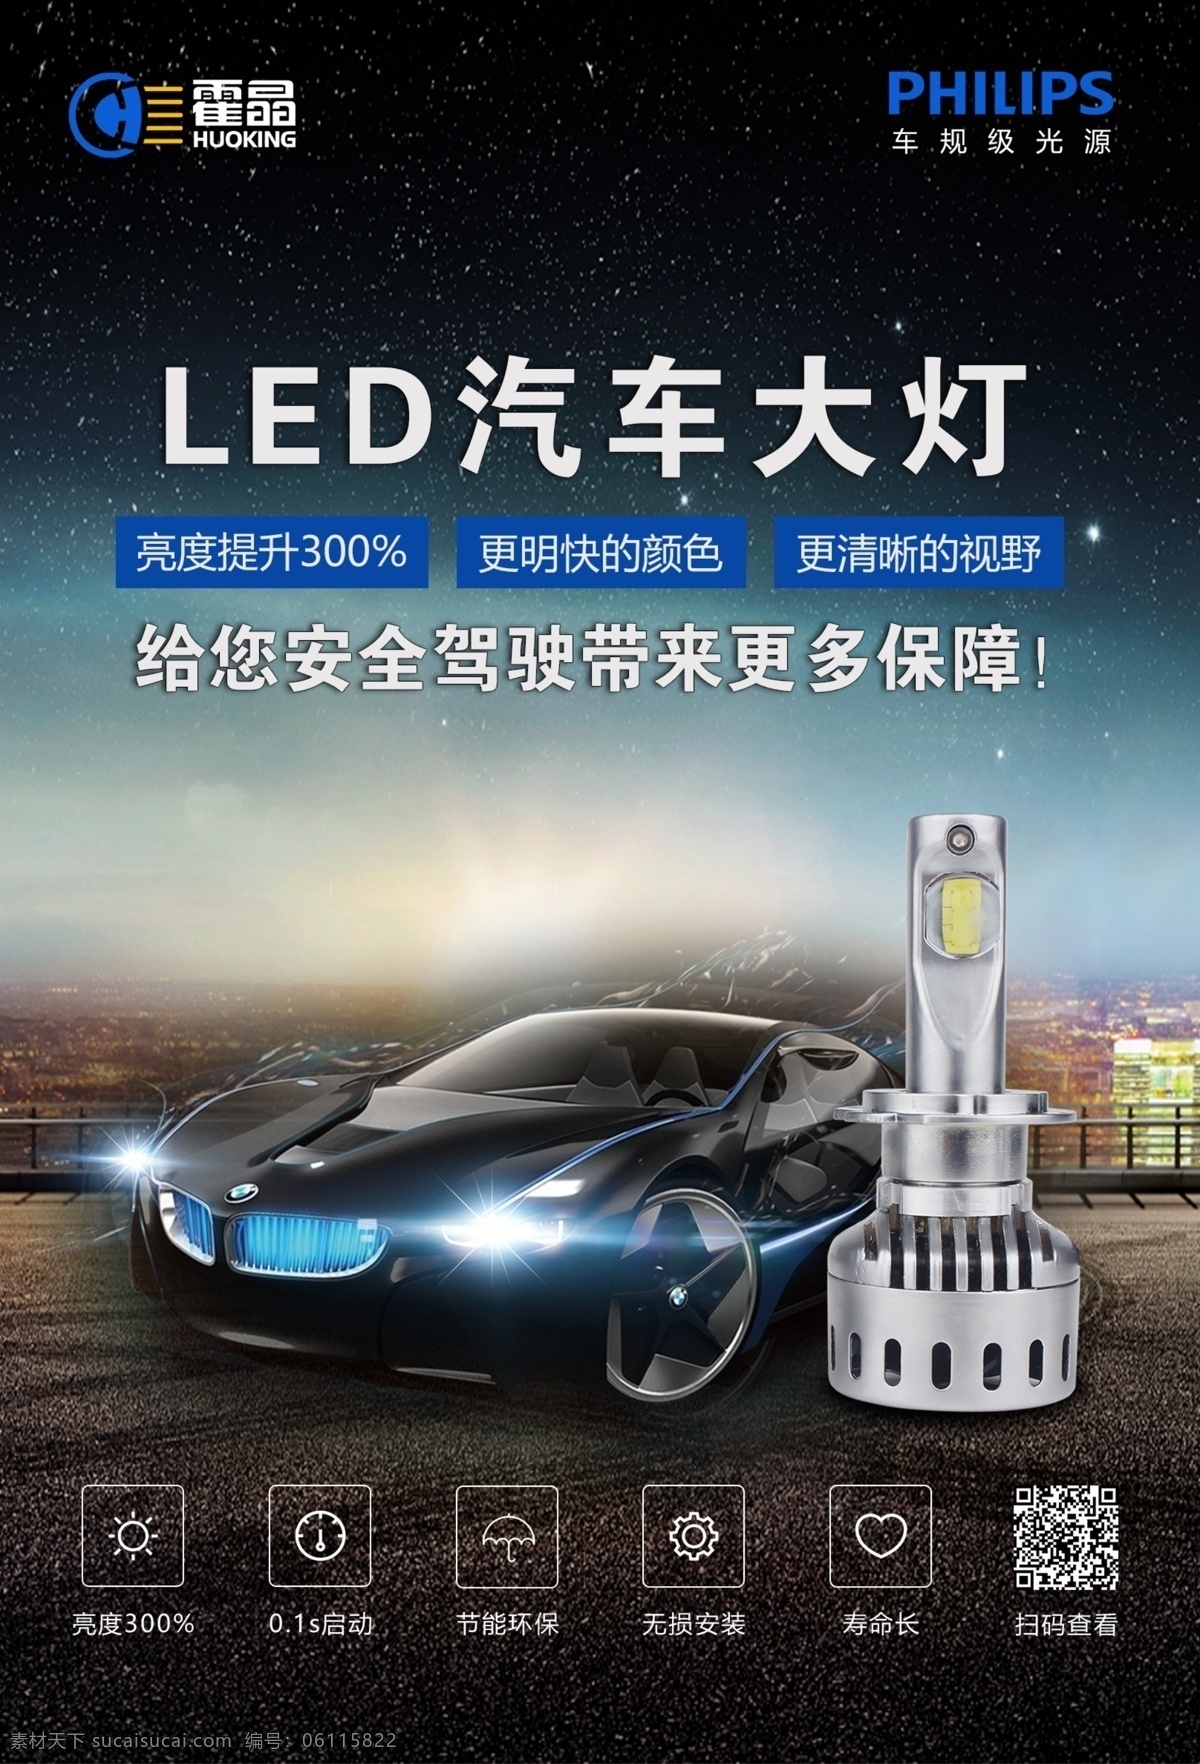 2018 大气 led 汽车 大灯 海报 模板 霍 晶 光电 霍晶光电 汽车大灯